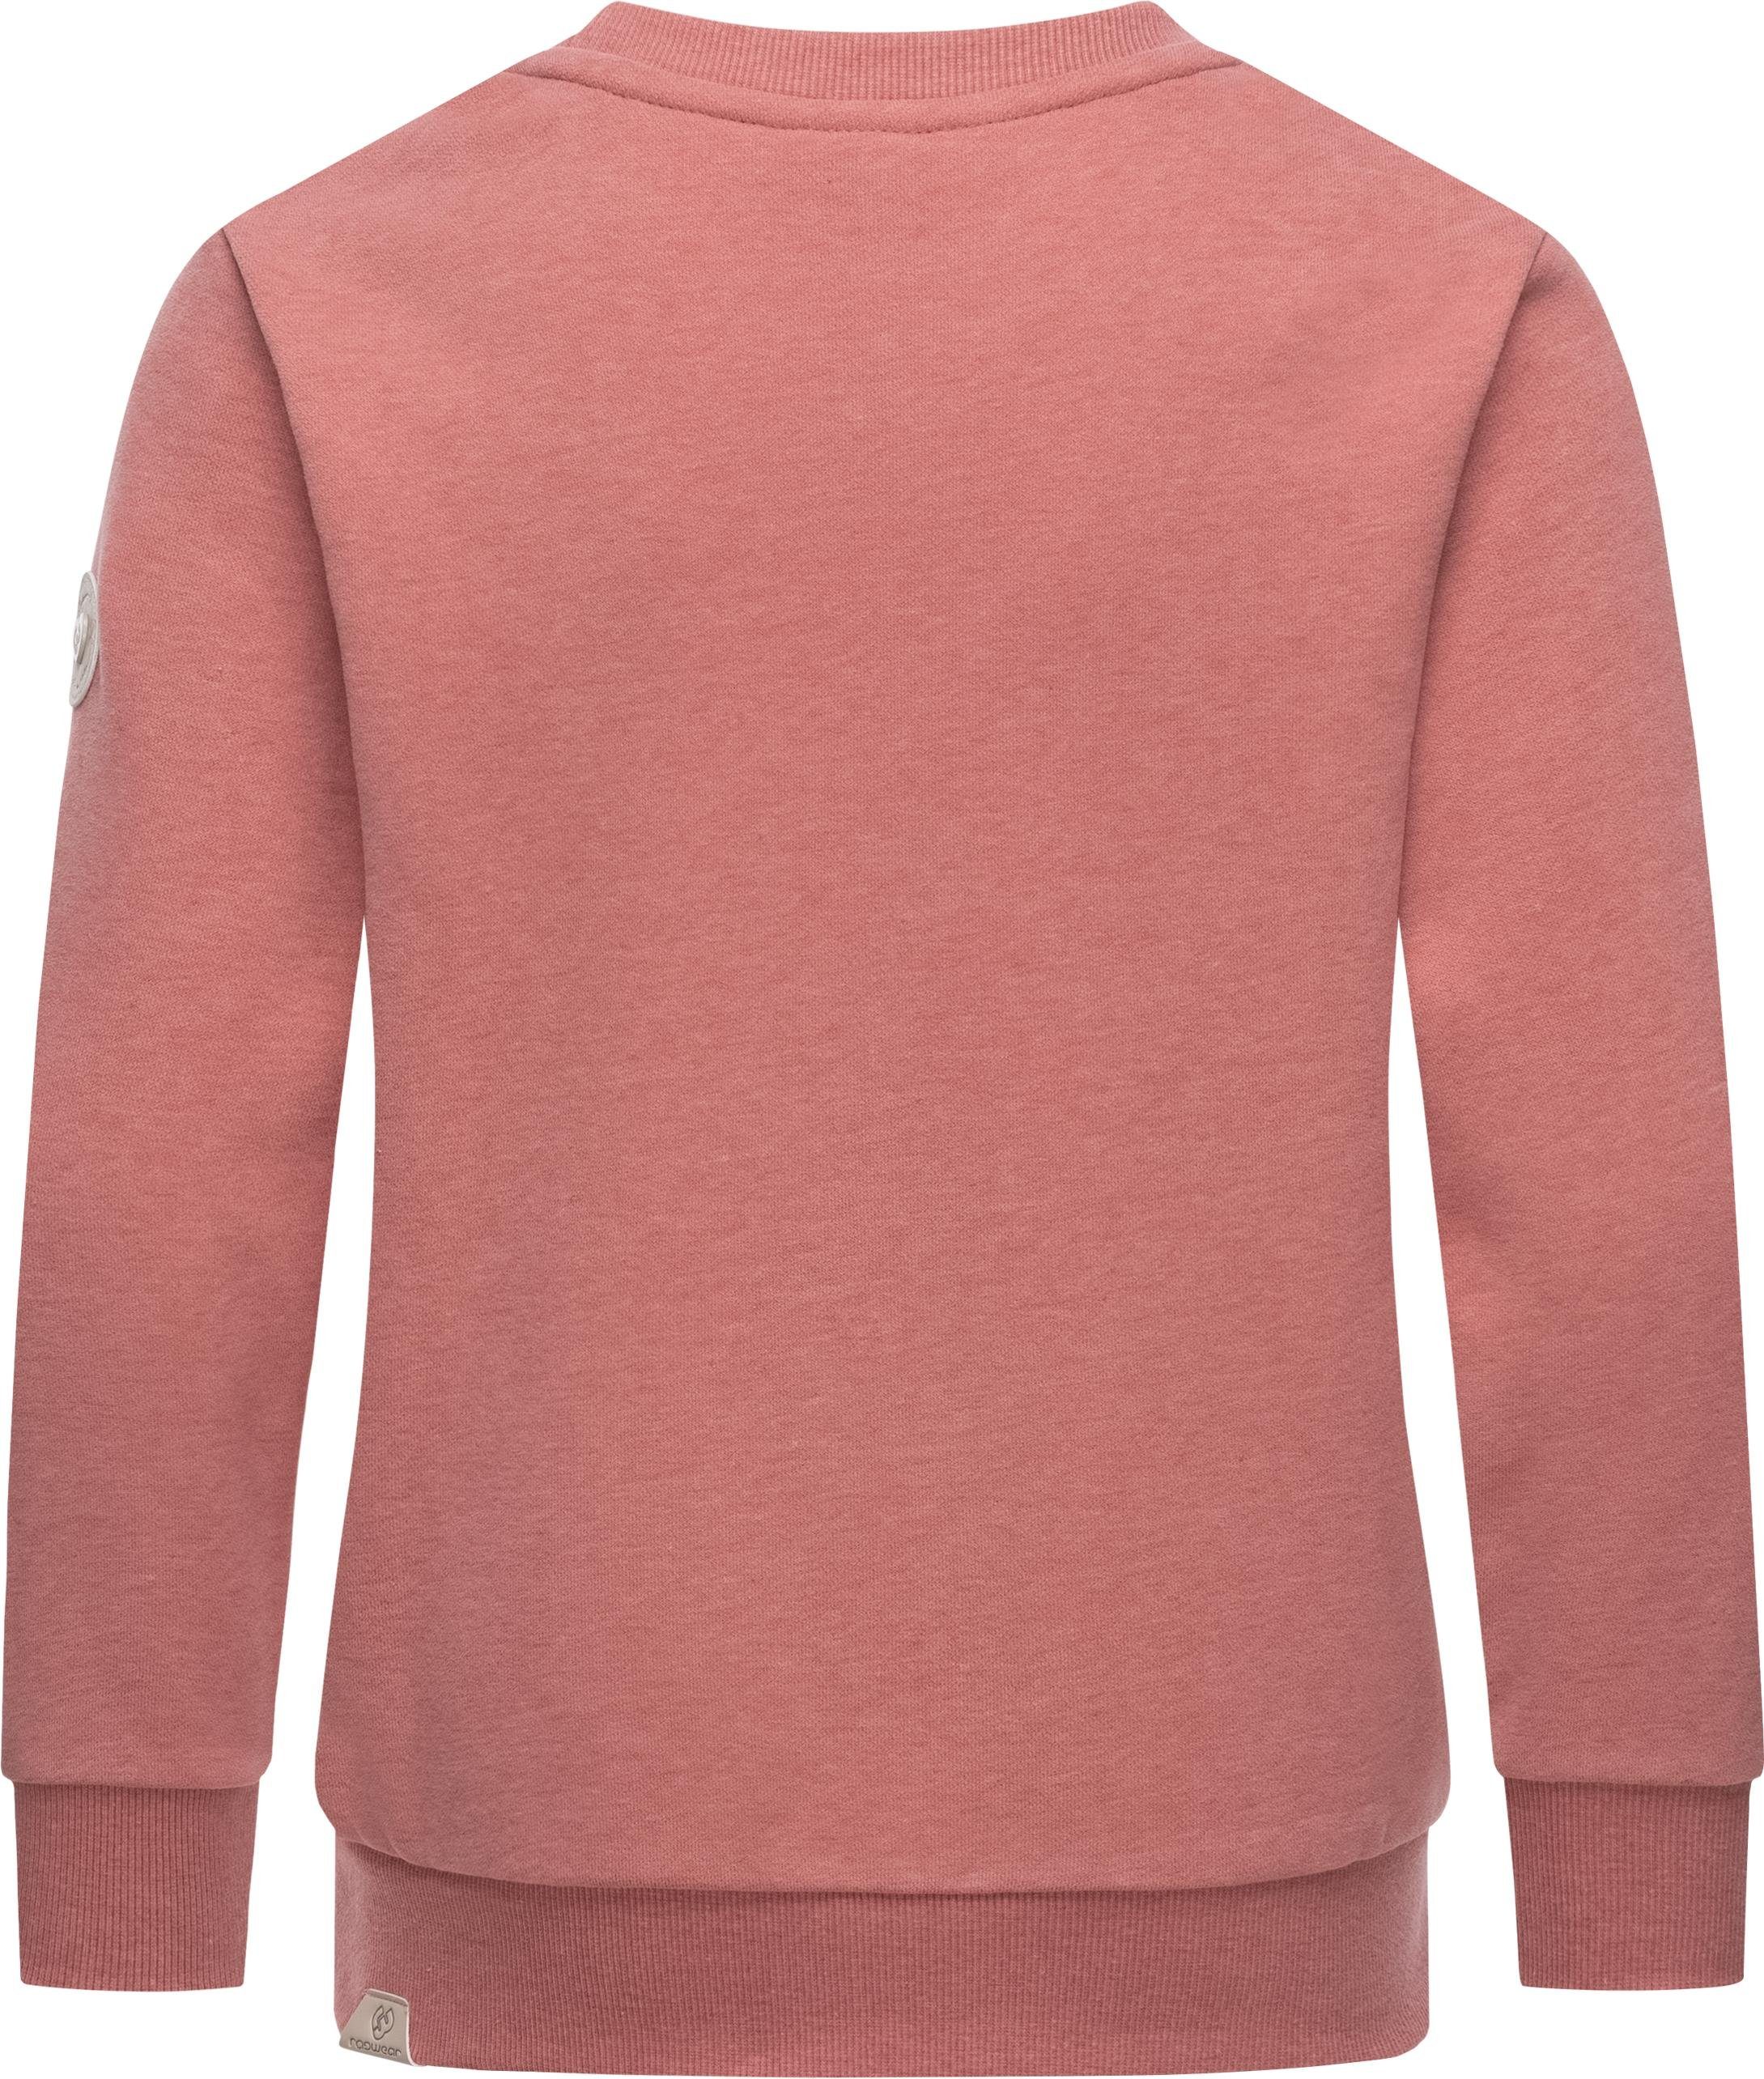 Print coolem Mädchen stylisches Print rosa Evka mit Sweatshirt Sweater Logo Ragwear